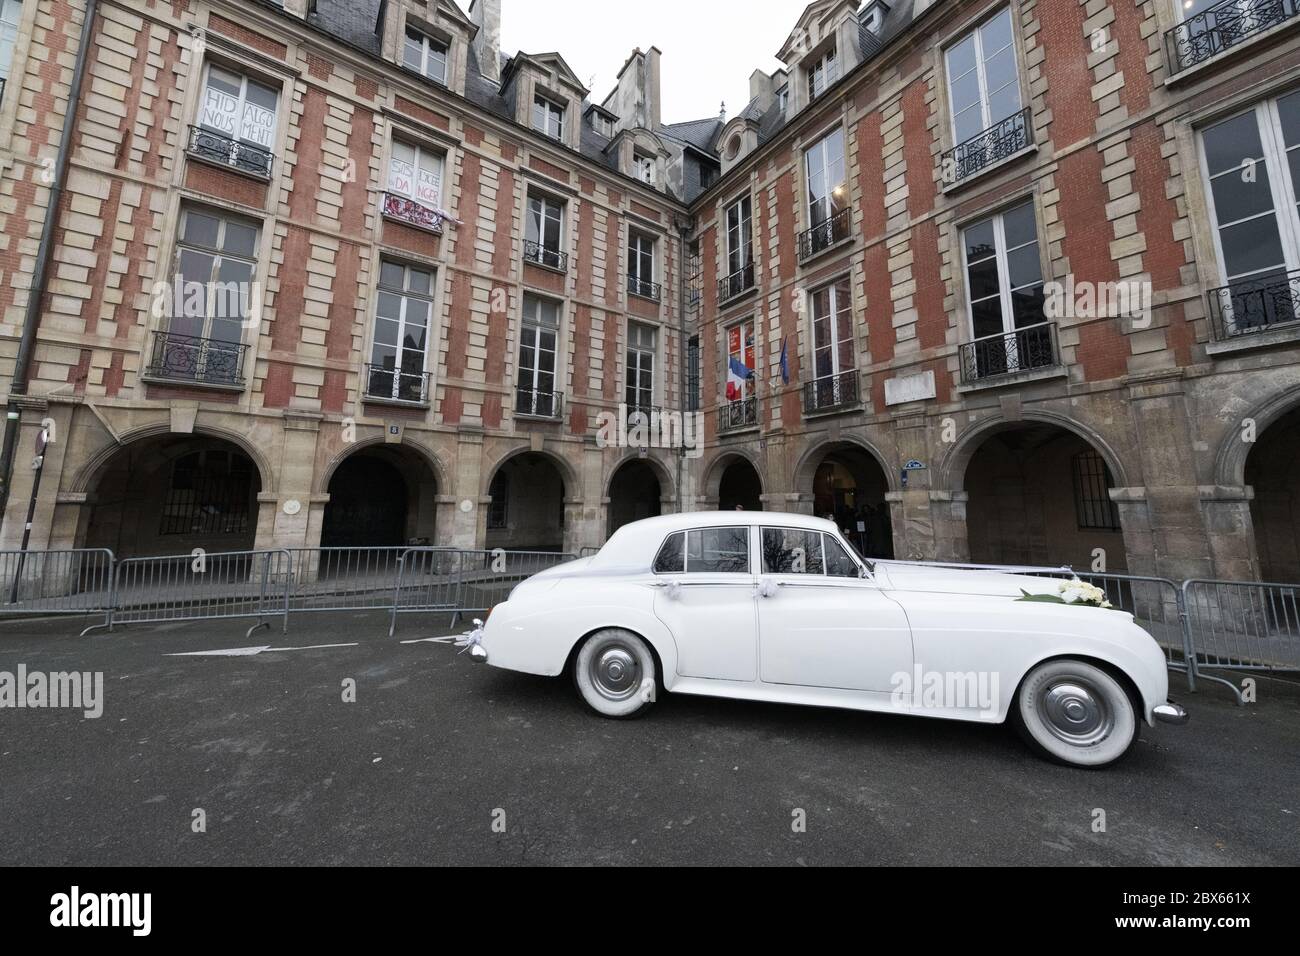 Frankreich, Paris, Place des Vosges, 2020-12: Hochzeit im Gange ist einer der wichtigsten Orte für Paare, die nach ihrer Hochzeit fotografiert werden. Stockfoto